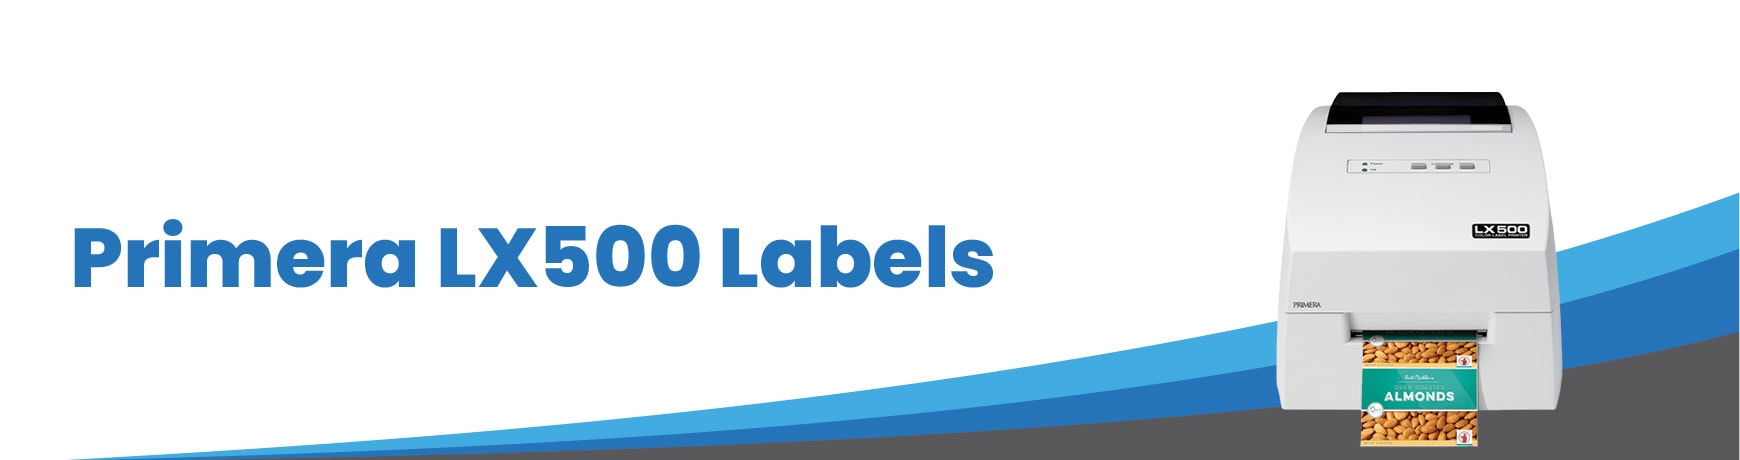 Primera LX500 Labels